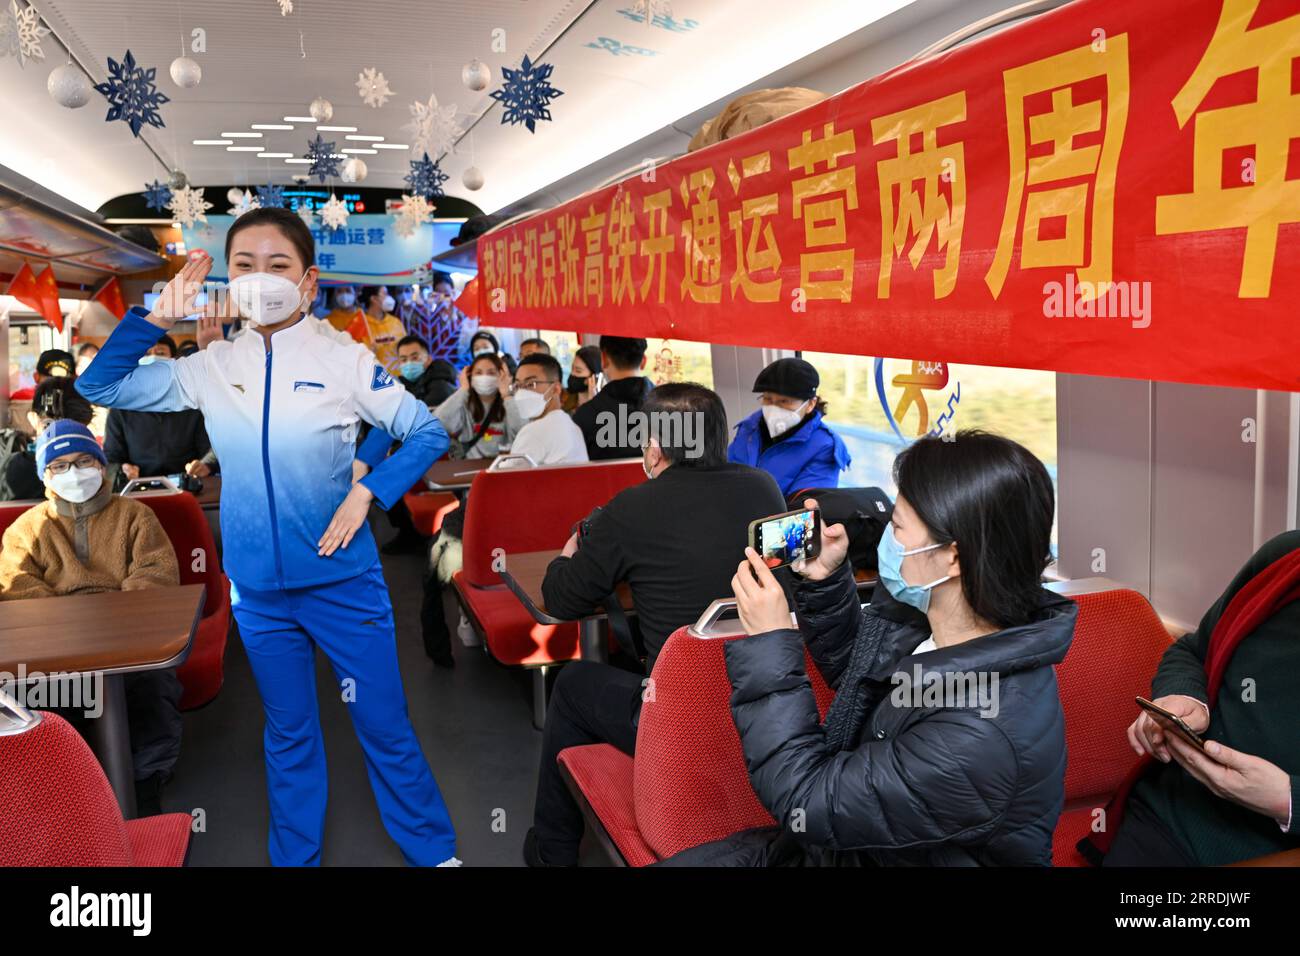 211230 -- PEKING, 30. Dezember 2021 -- Ein Besatzungsmitglied tritt am 30. Dezember 2021 in einem Zug der Peking-Zhangjiakou-Hochgeschwindigkeitsbahn auf. Die Hochgeschwindigkeitsbahn zwischen Peking und Zhangjiakou in der nordchinesischen Provinz Hebei wurde am 30. Dezember 2019 in Betrieb genommen. CHINA-PEKING-ZHANGJIAKOU-HOCHGESCHWINDIGKEITSBAHN-ZWEIJÄHRIGES BESTEHEN CN HUANGXZHEN PUBLICATIONXNOTXINXCHN Stockfoto